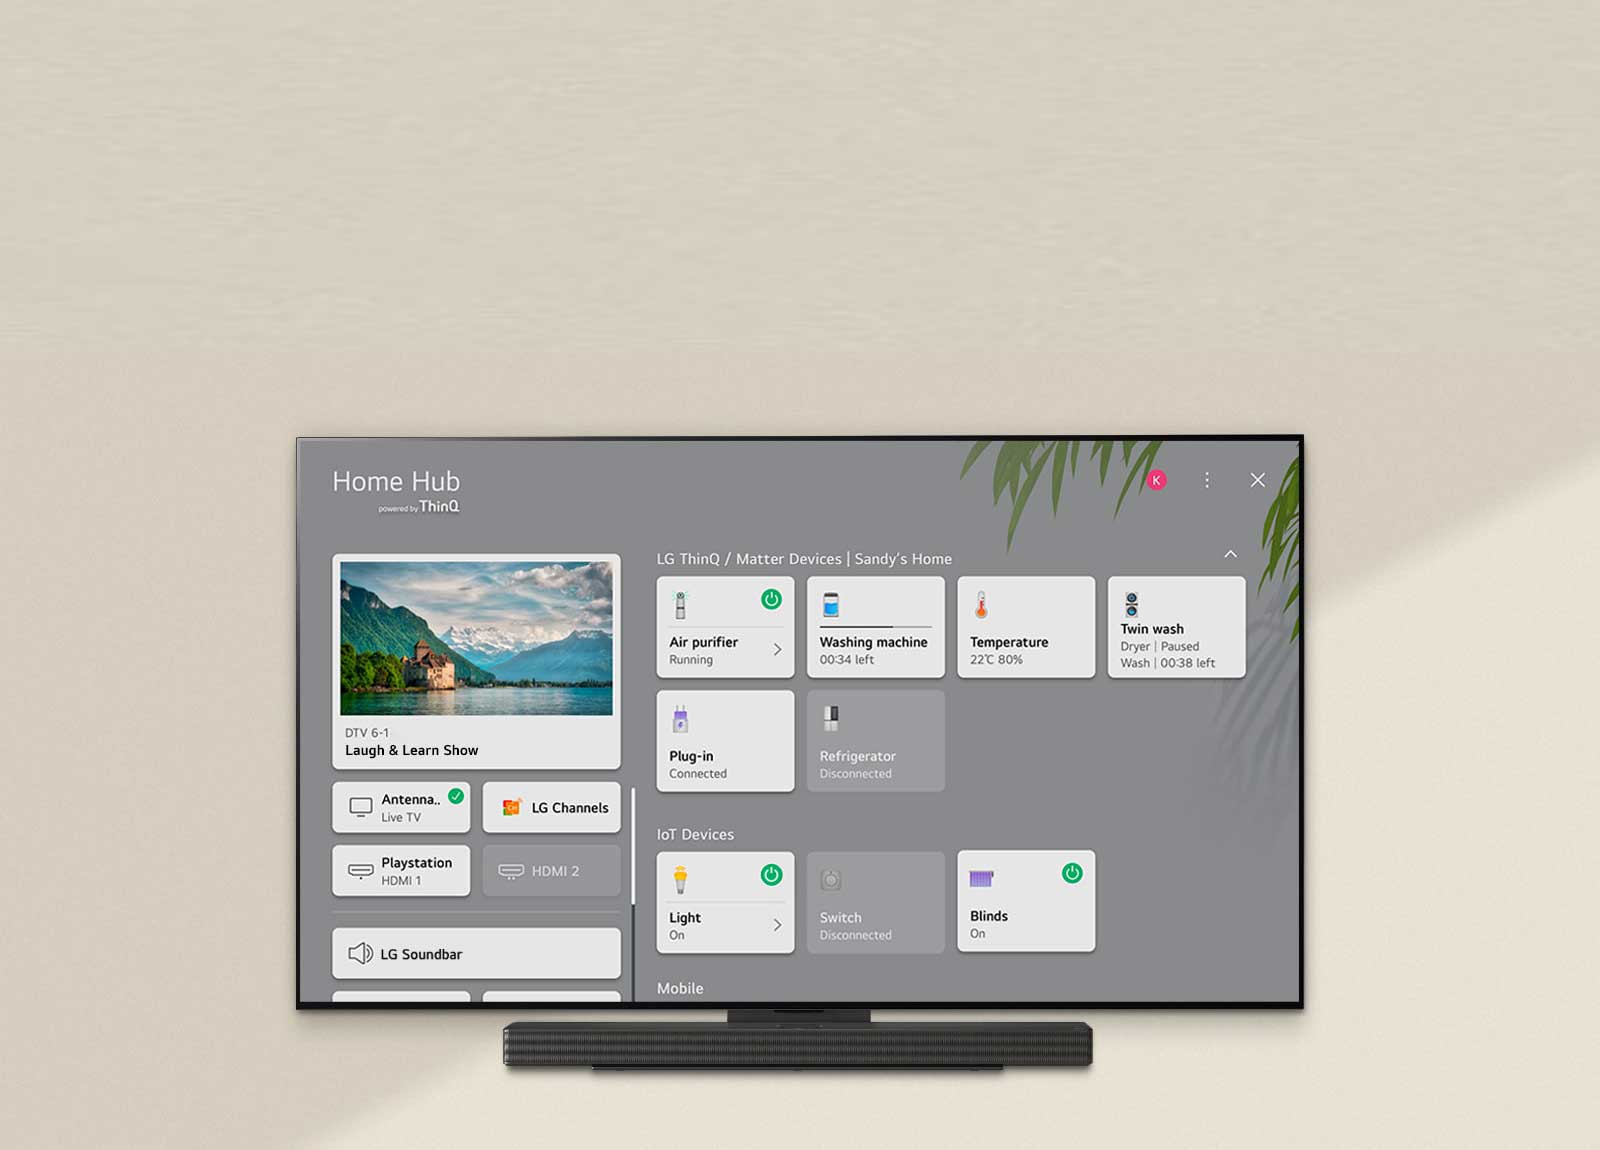 Пульт дистанционного управления направлен на телевизор LG OLED TV, в правой части экрана которого отображаются настройки.